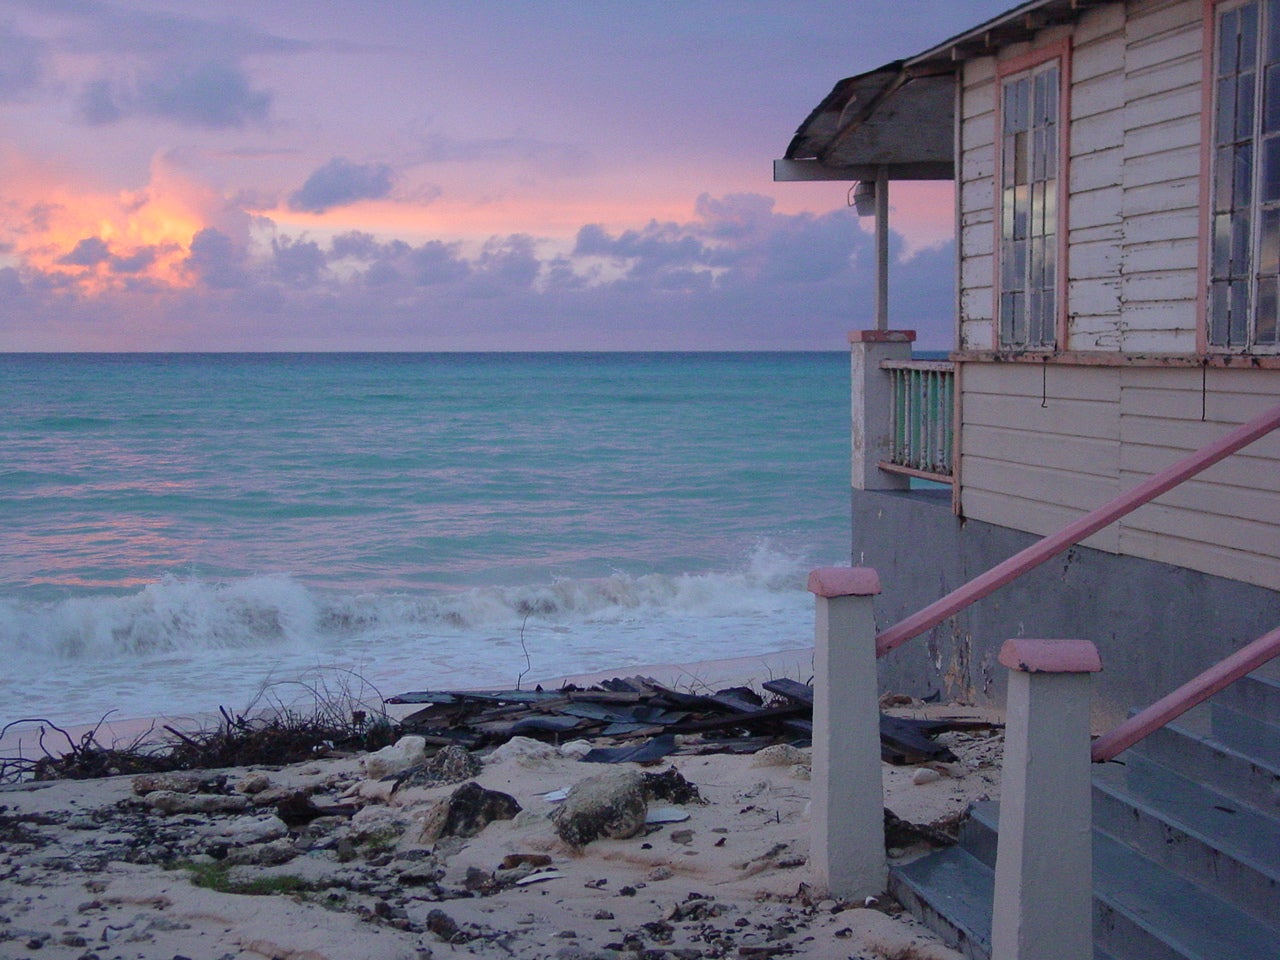 Distant dream: sunrise in Barbados